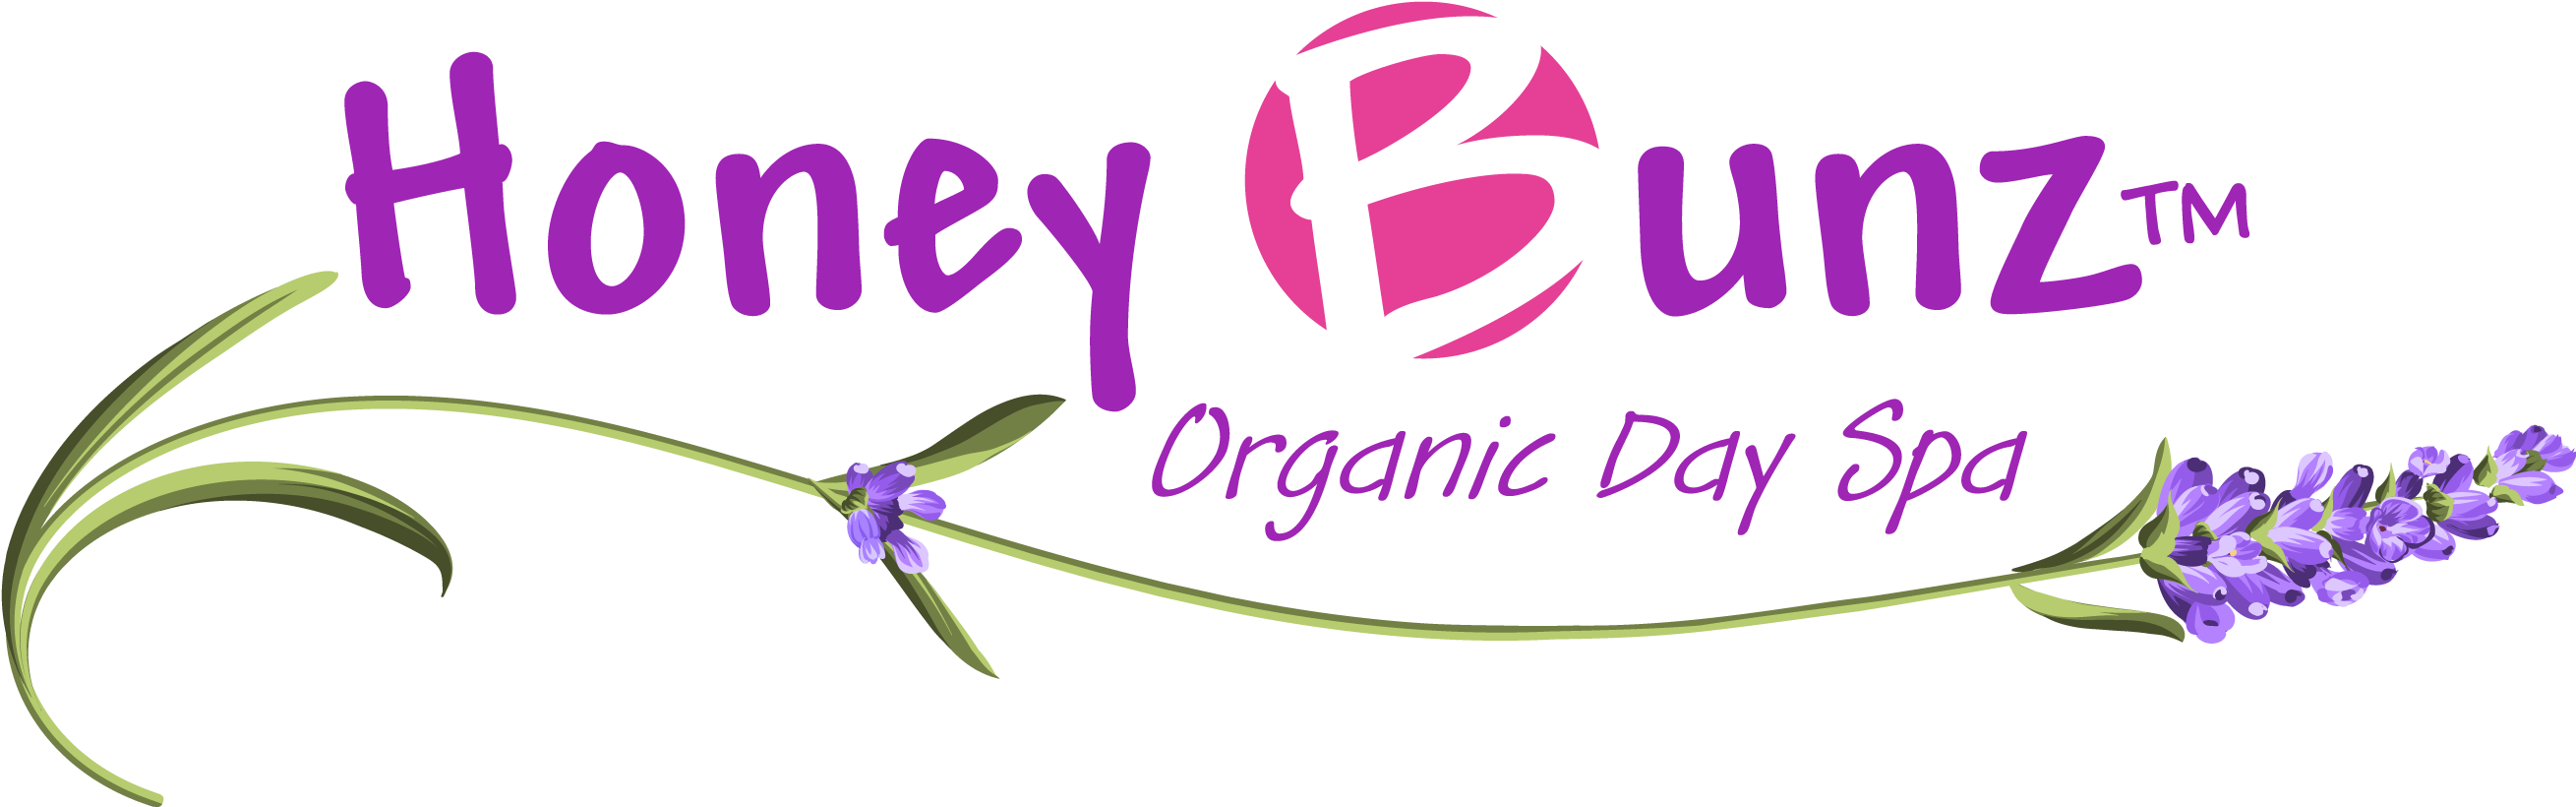 Honey Bunz™ Organic Day Spa - Honey Bunz Lockport Ny (2667x861)